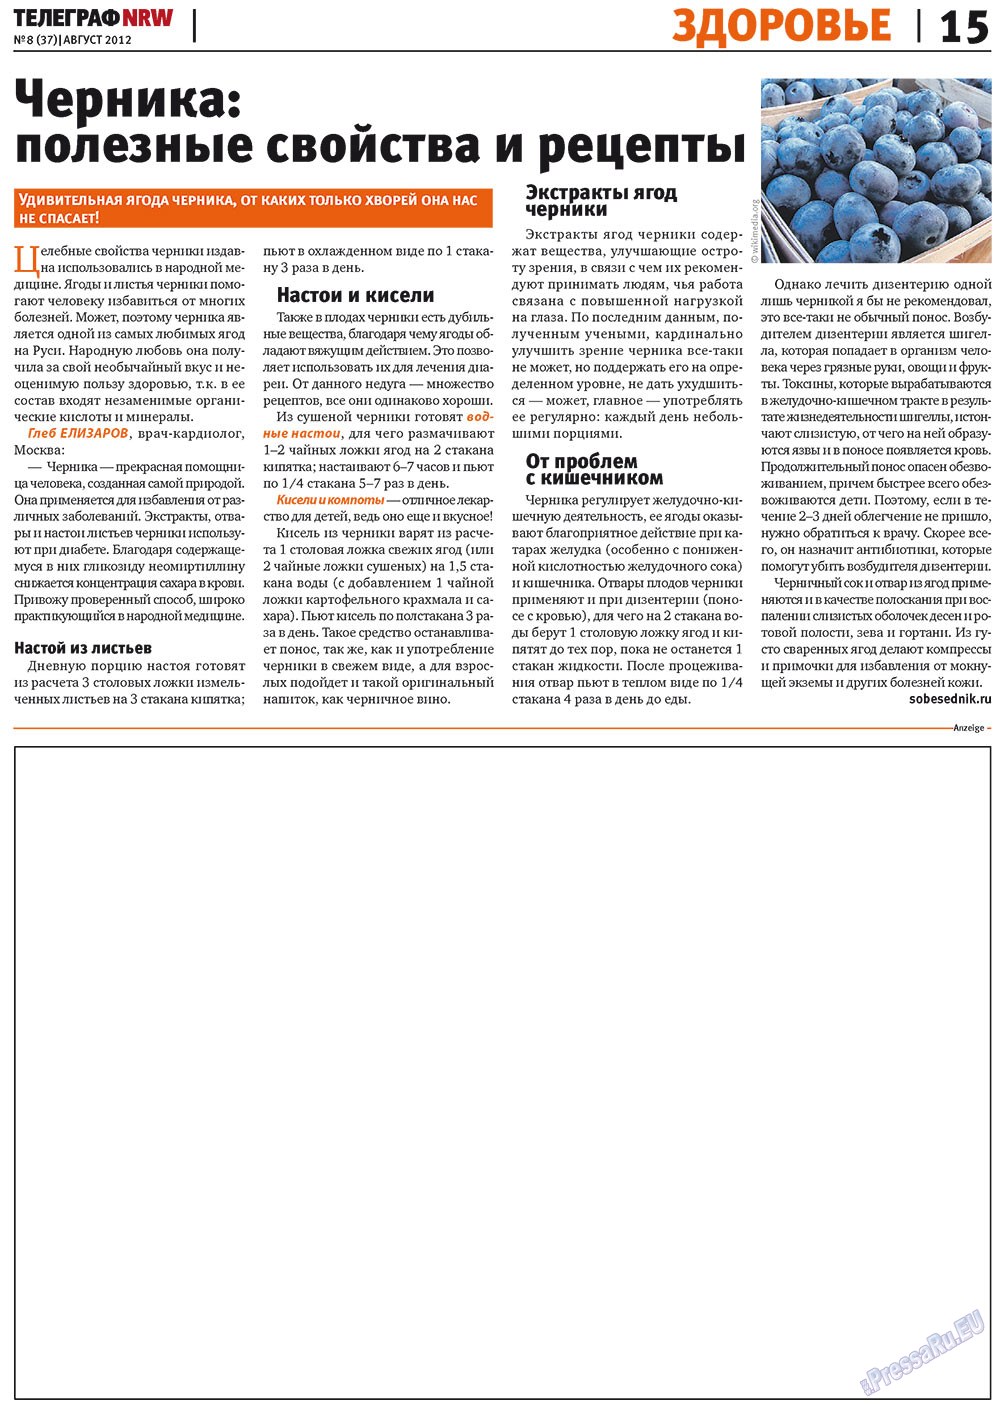 Телеграф NRW (газета). 2012 год, номер 8, стр. 15